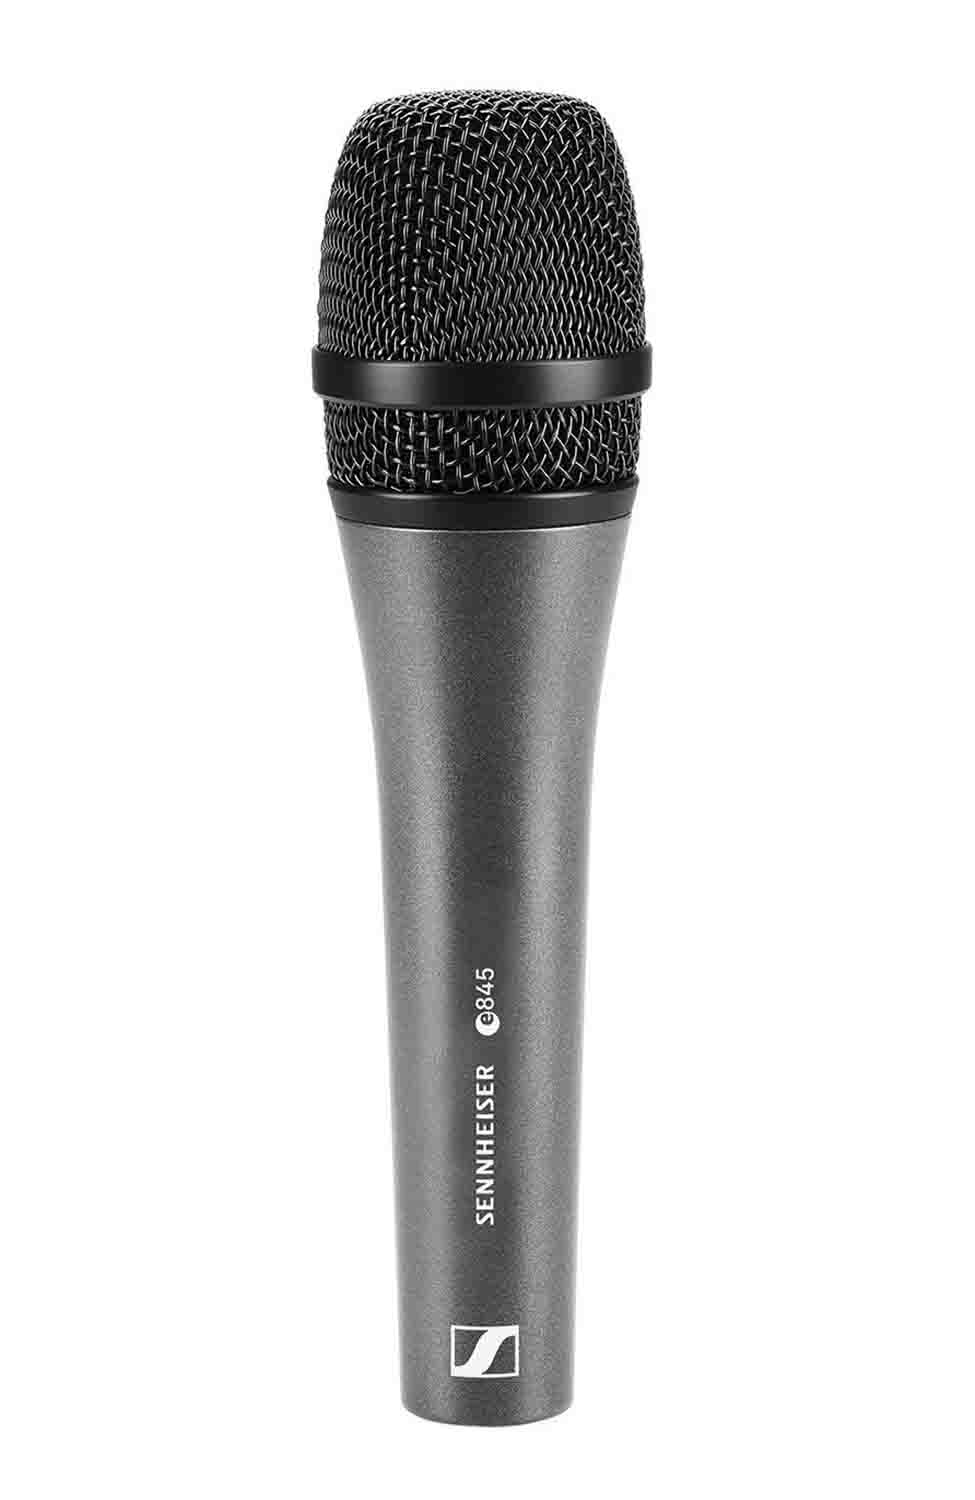 Sennheiser E 845 Dynamic Supercardioid Vocal Microphone - Hollywood DJ